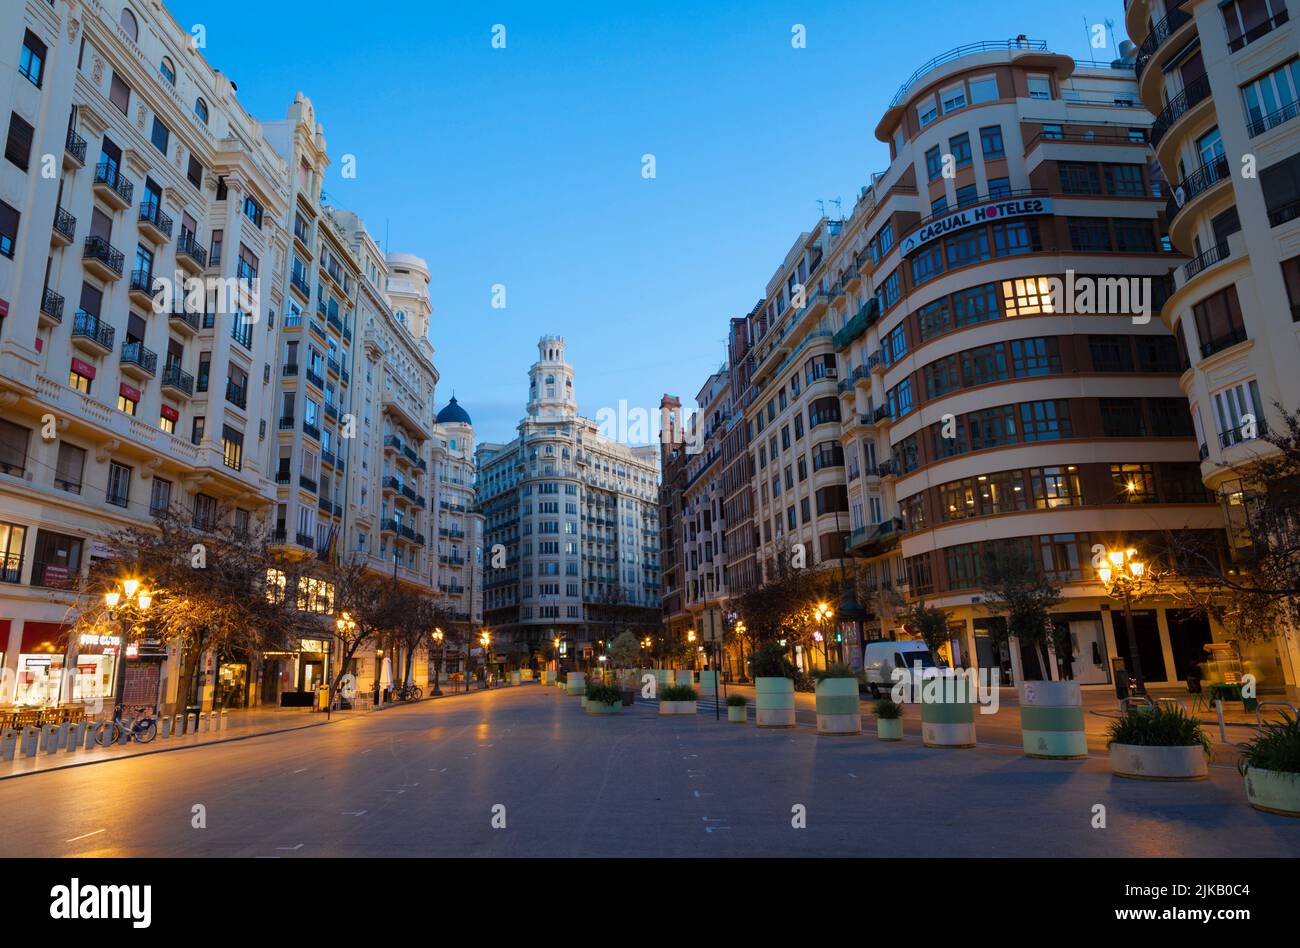 VALENCIA, SPAIN - FEBRUARY 16, 2022: The Ayuntamiento Square at dusk. Stock Photo